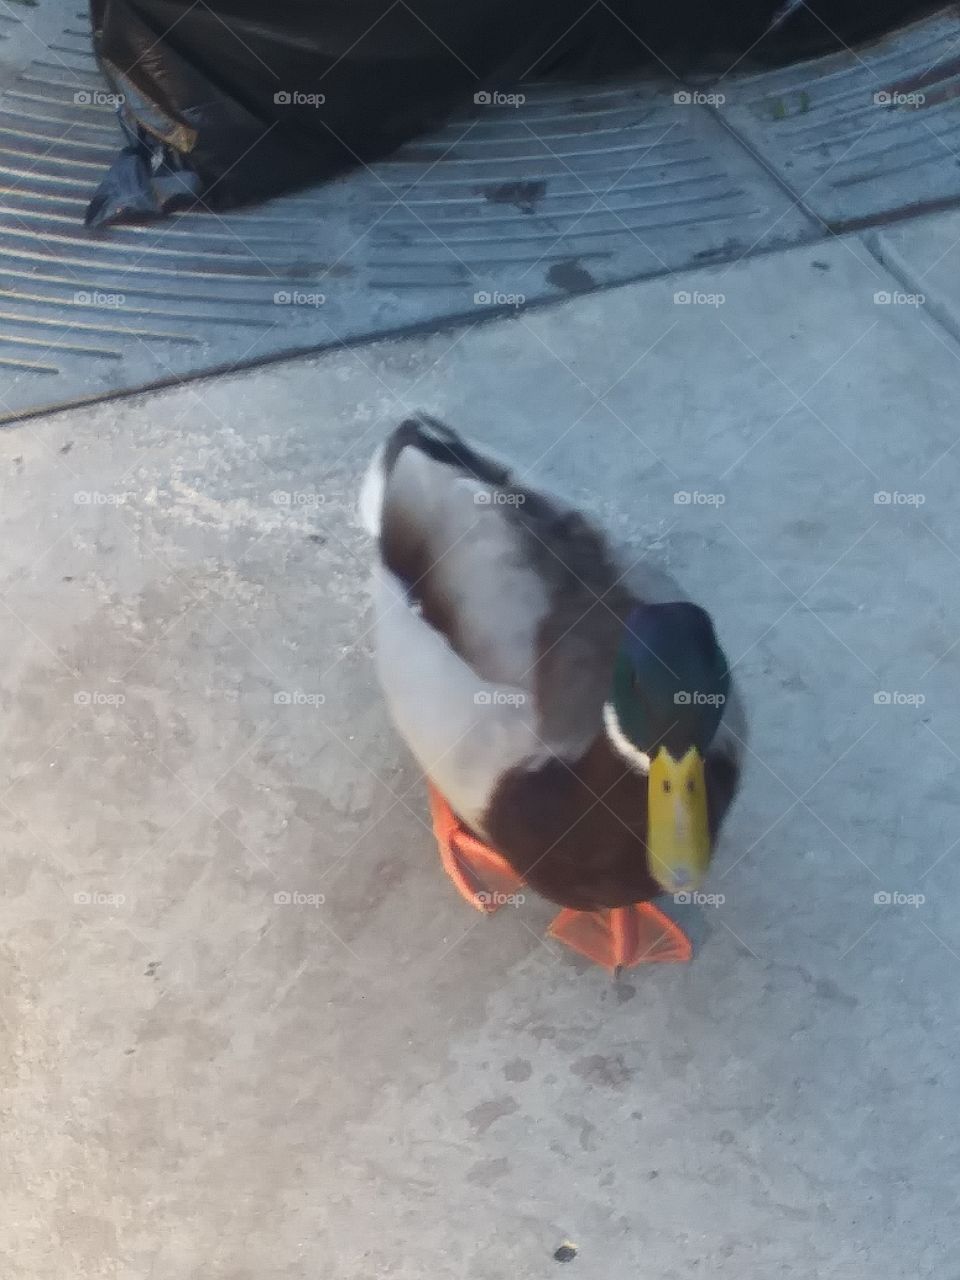 duck3